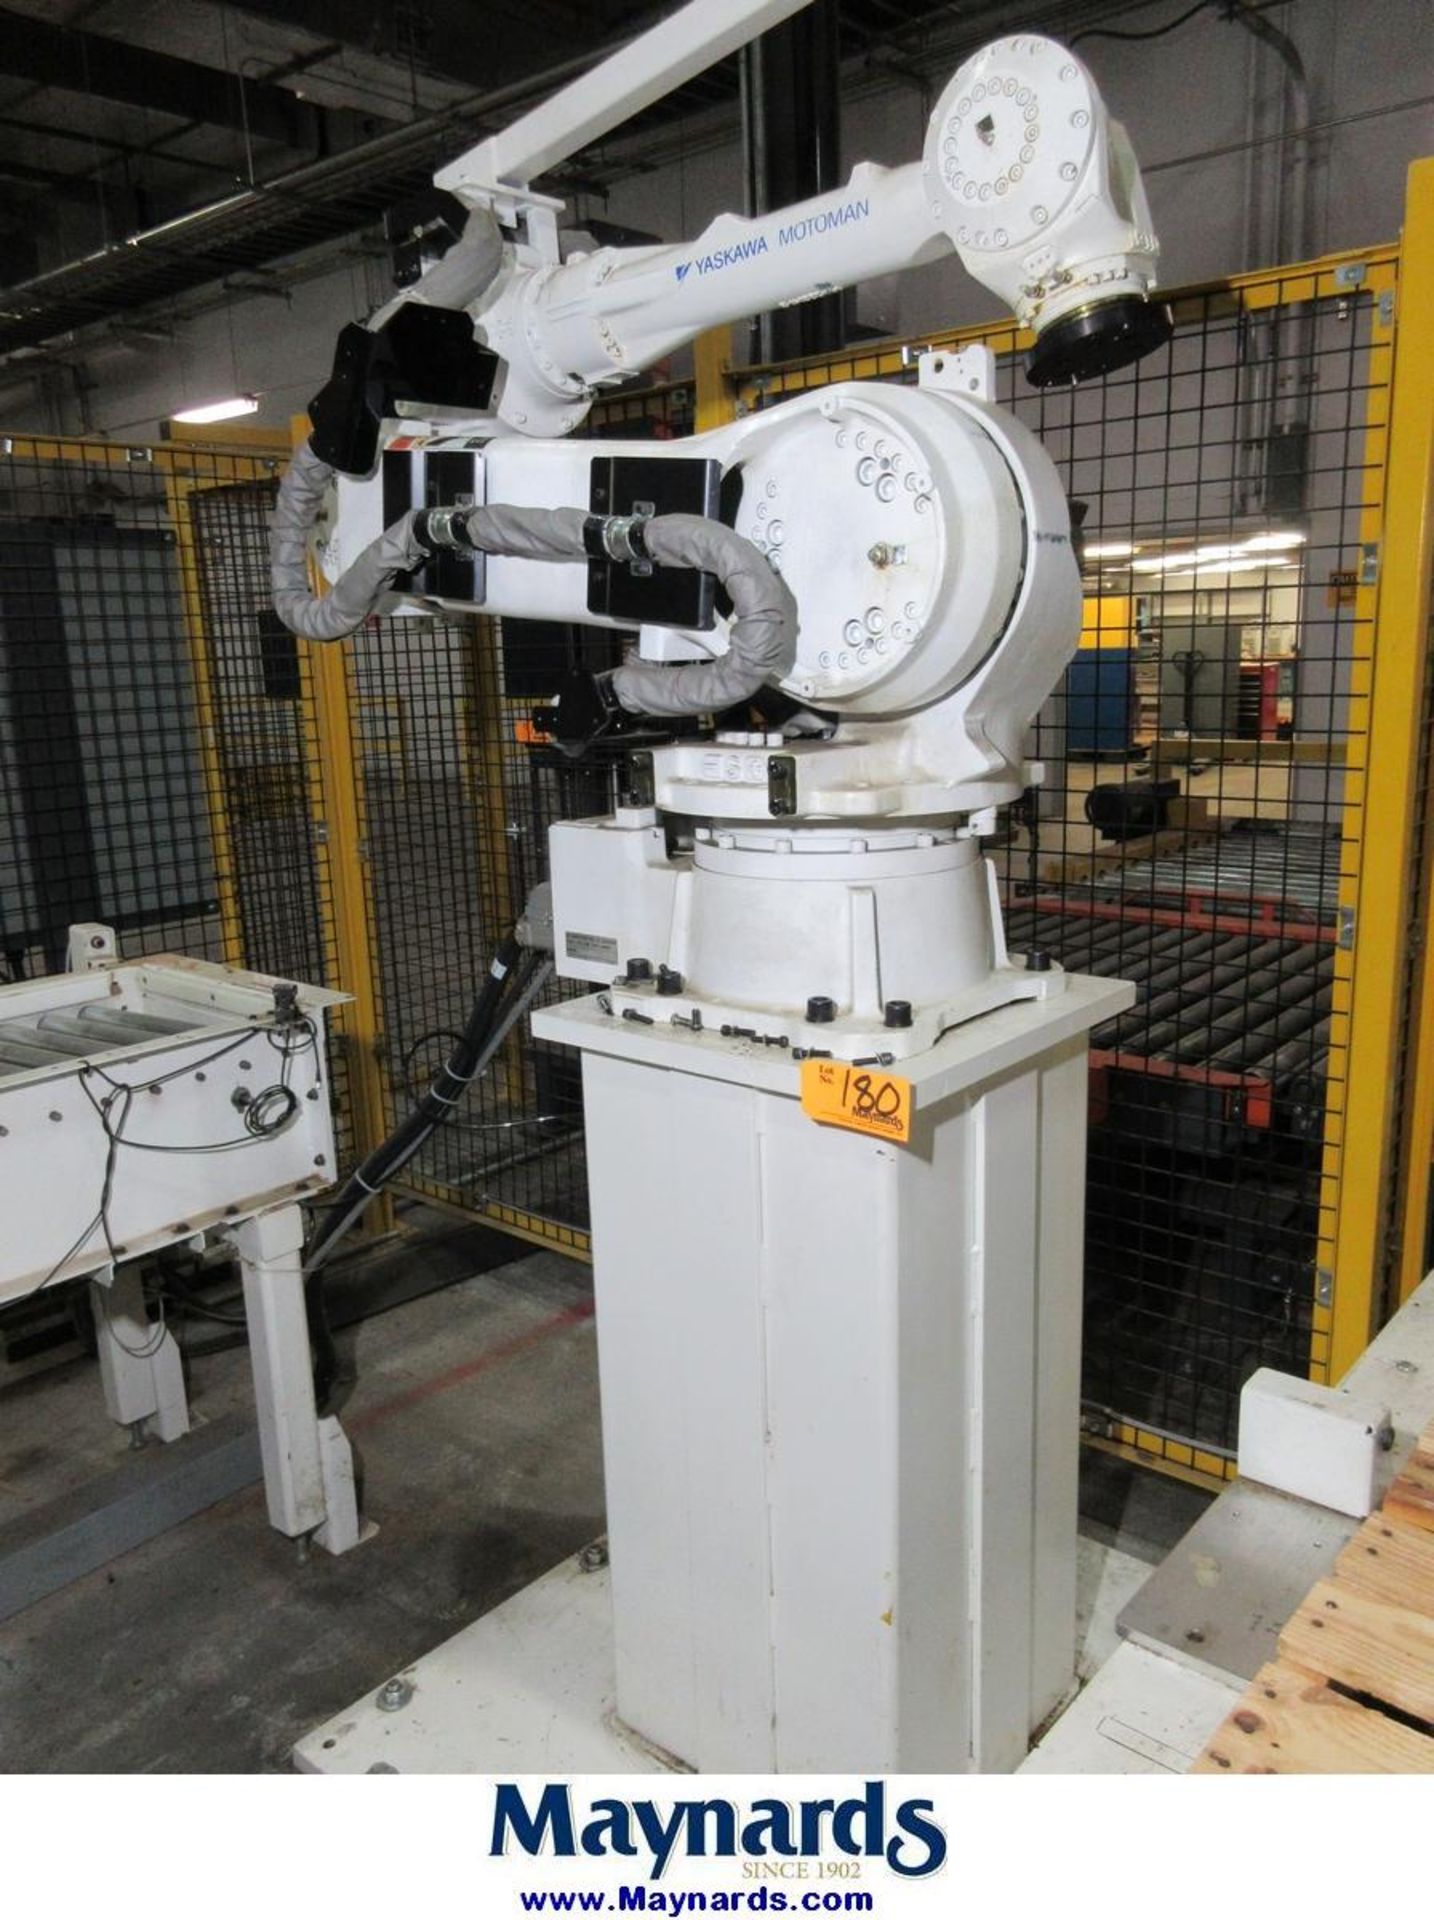 2012 Yaskawa Motoman MPL80 Type YR-MPL0080-A04 Material Handling Robot - Image 2 of 11